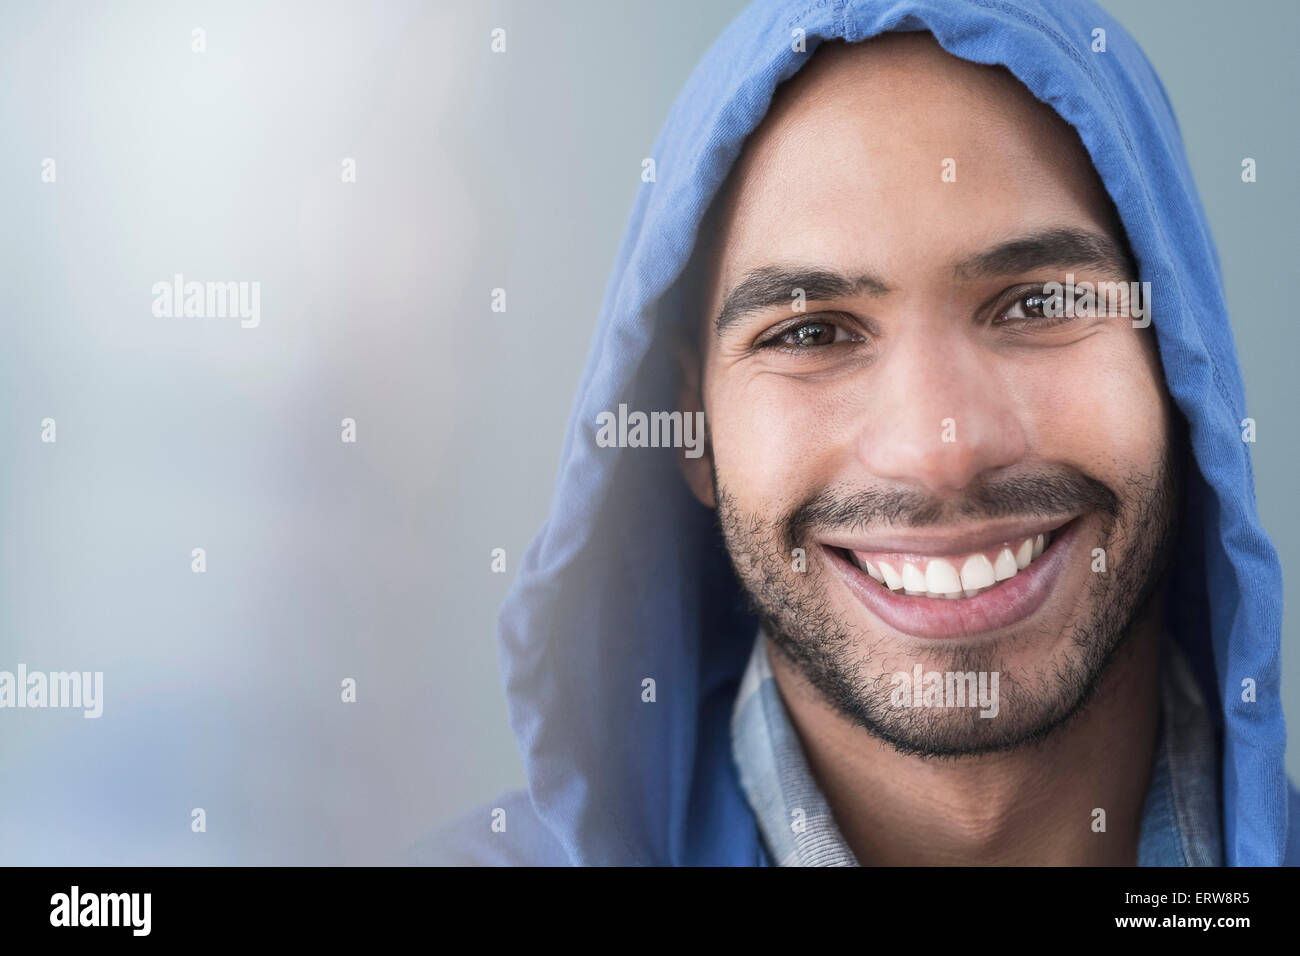 Smiling Hispanic man wearing hoodie Stock Photo